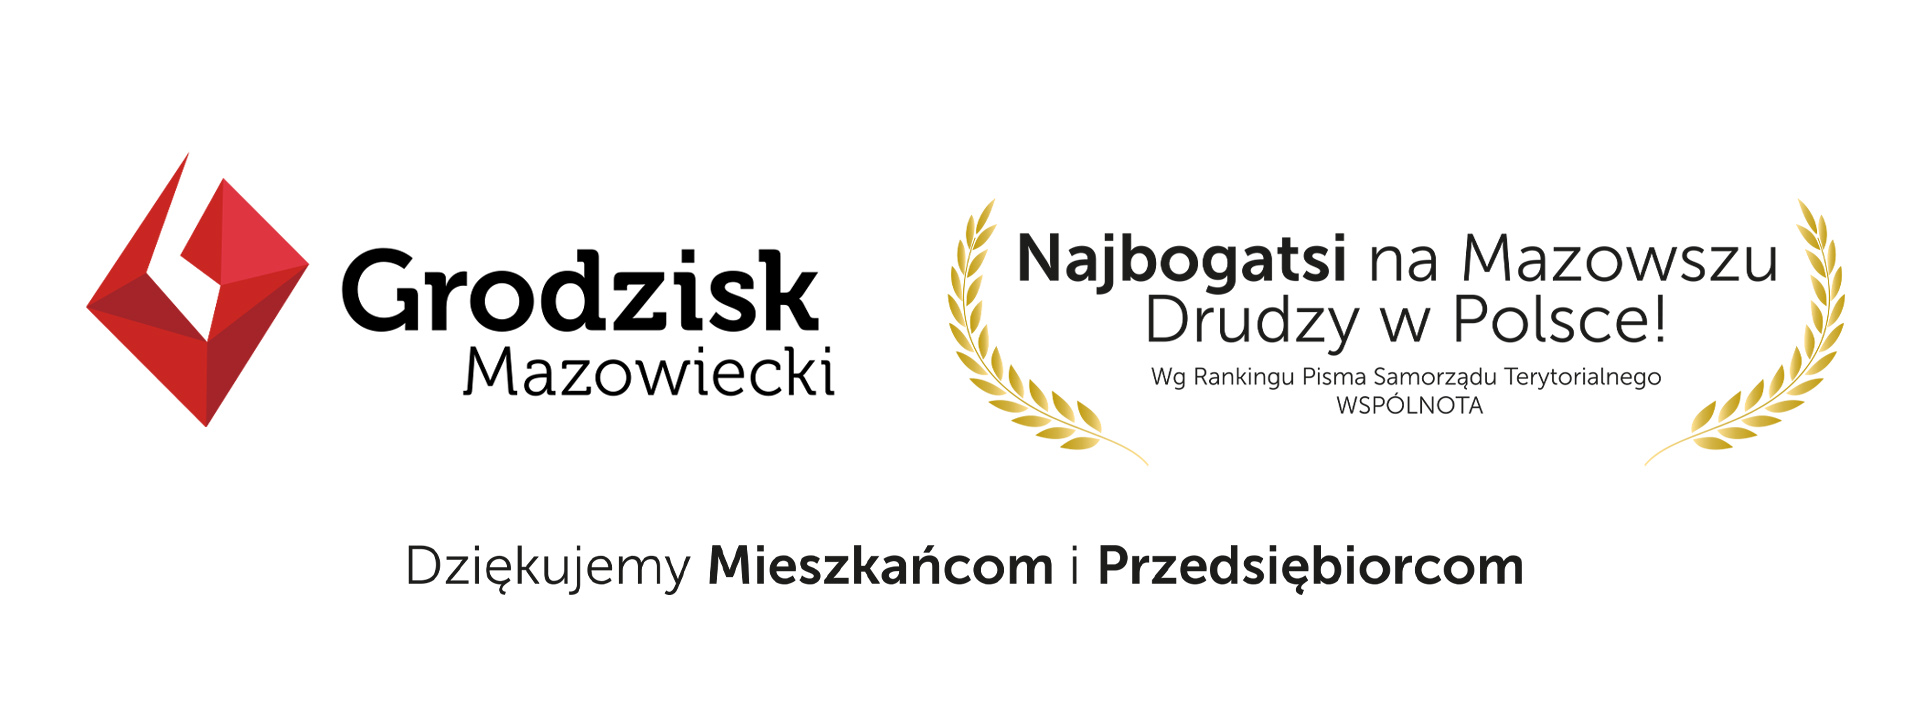 Grodzisk Mazowiecki w rankingu pisma samorządu terytorialnego wspólnota